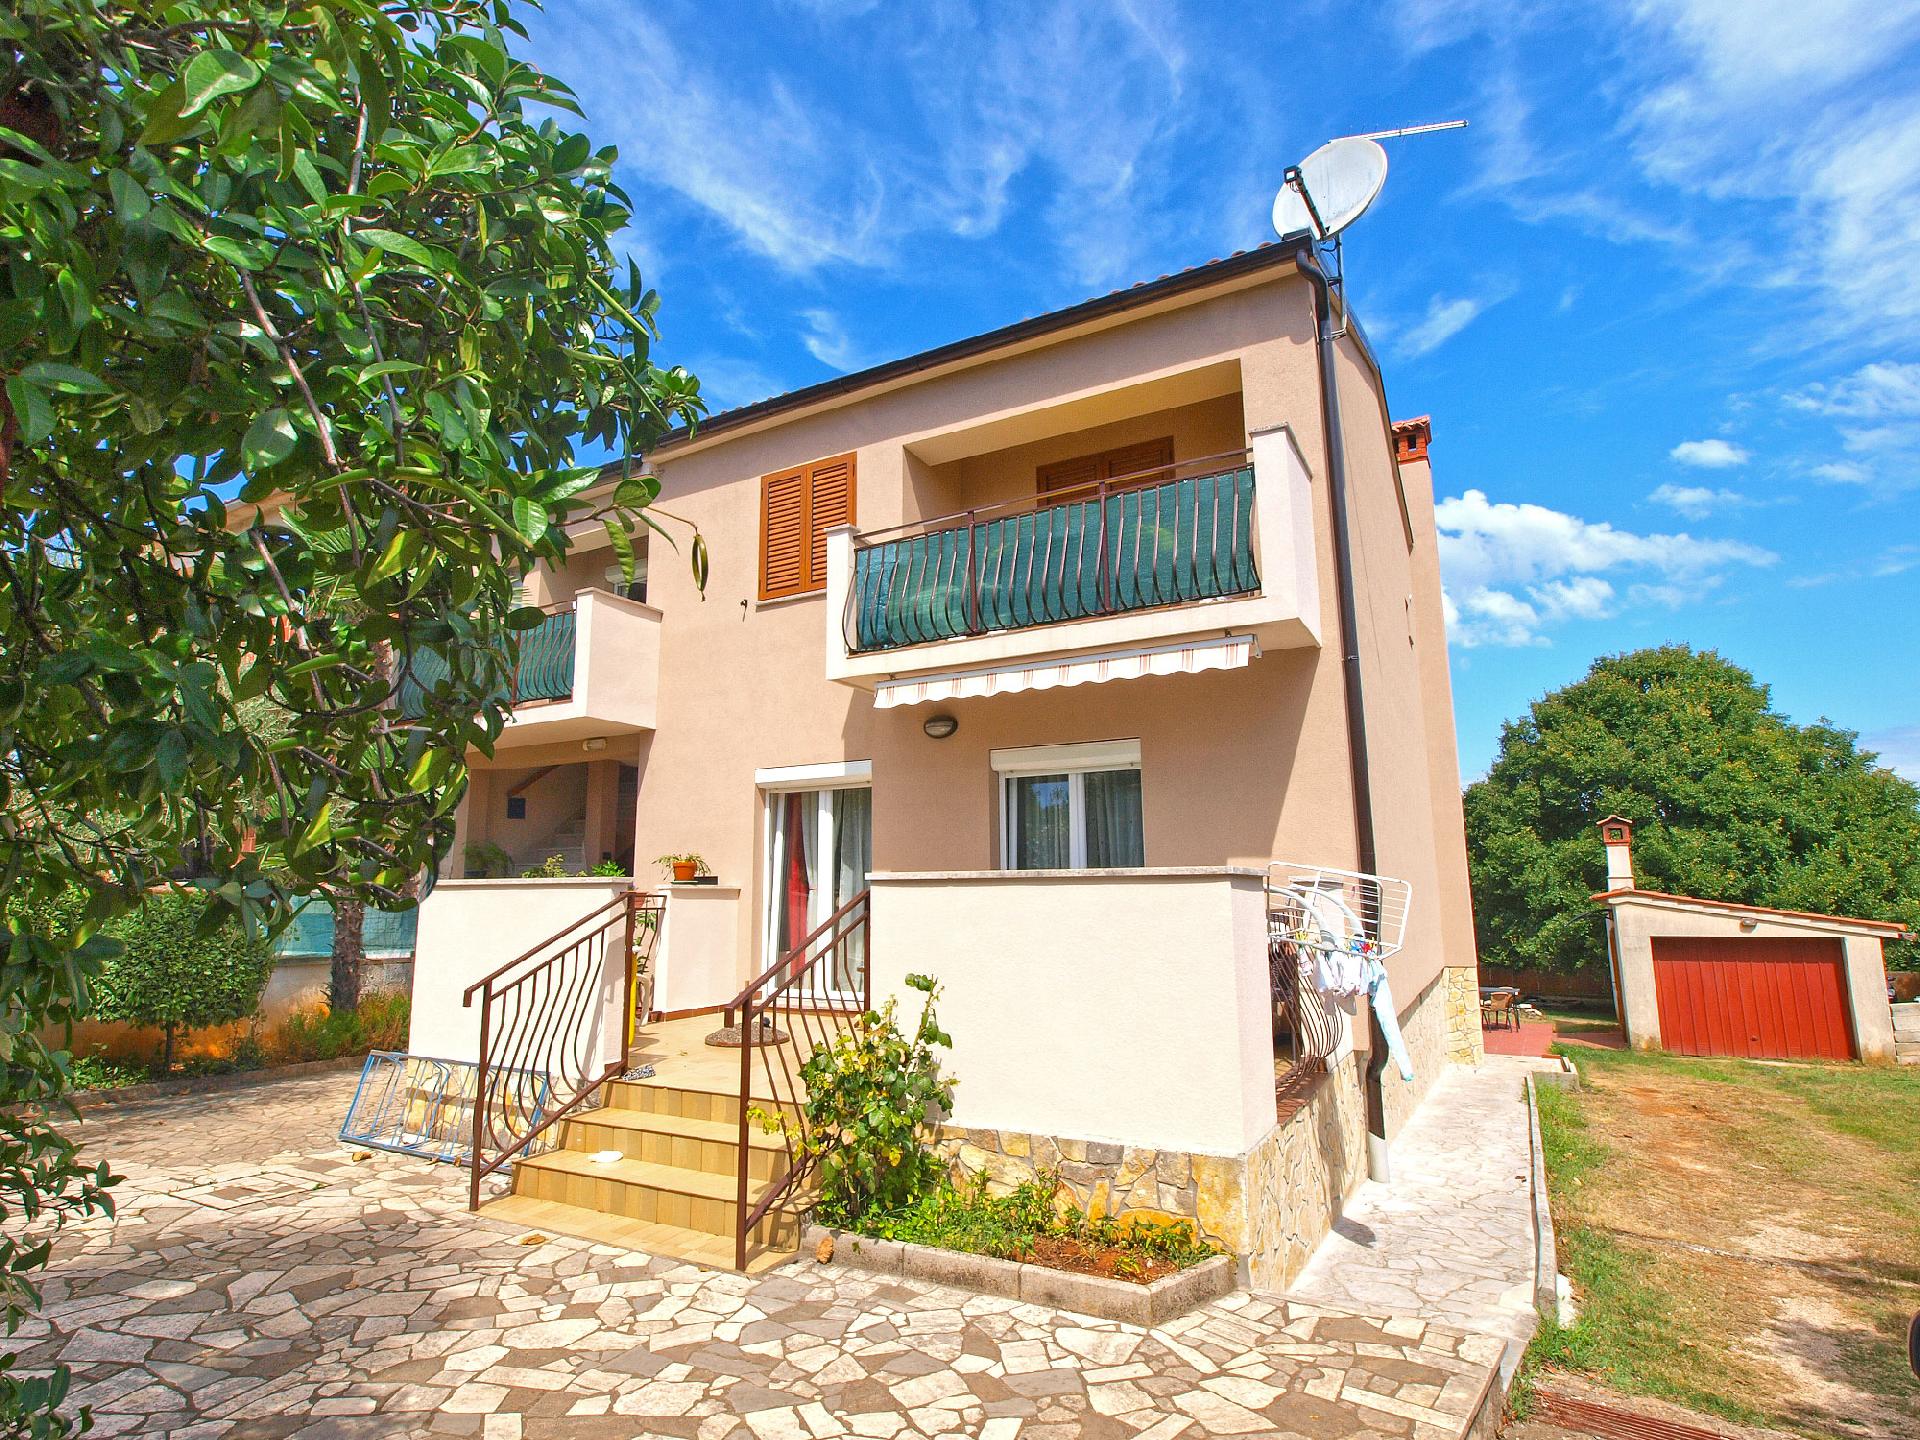 Ferienwohnung für 3 Personen ca. 31 m² i  in Istrien